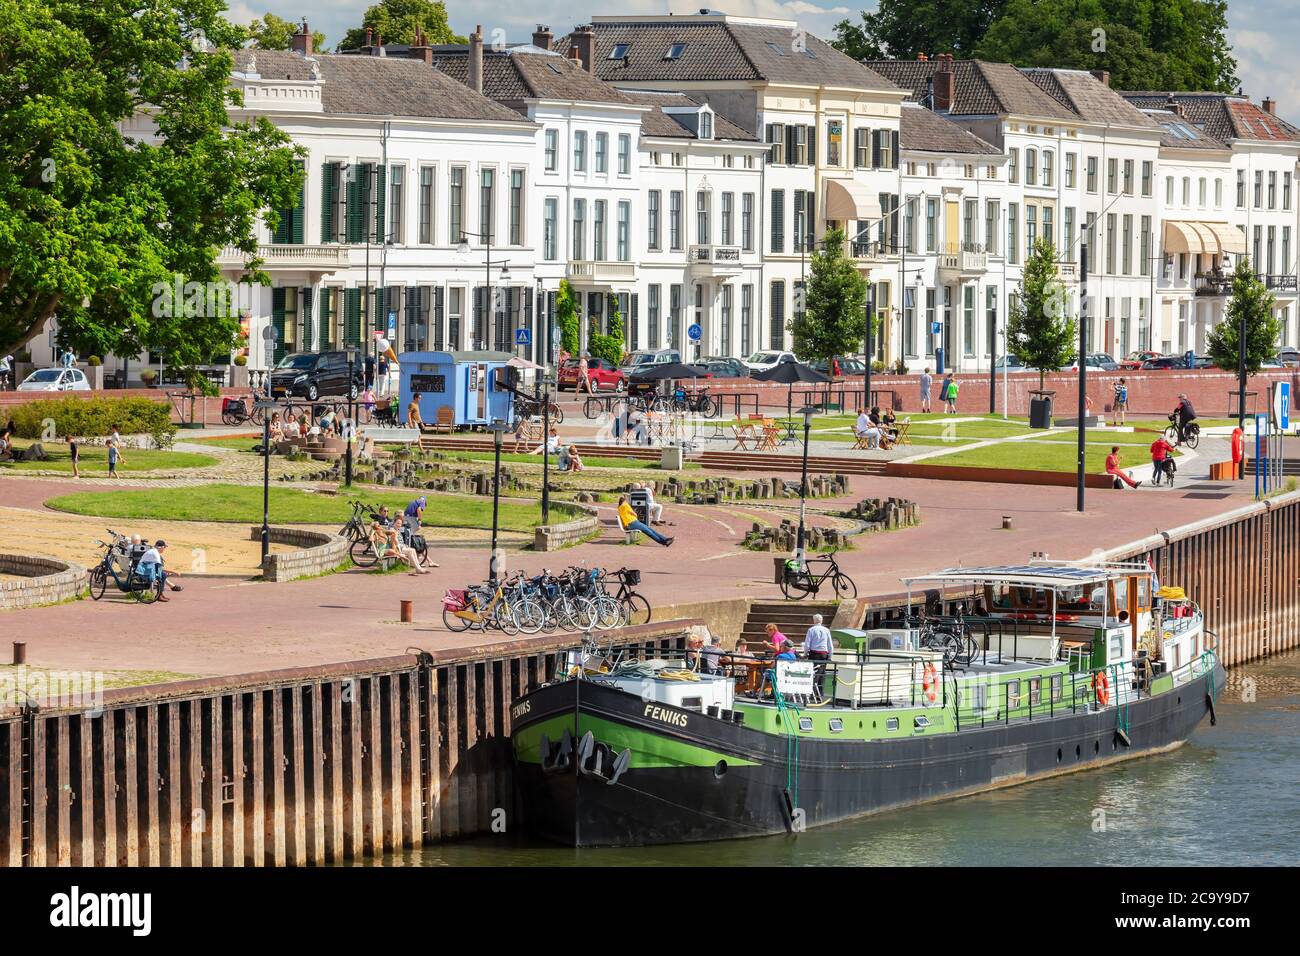 Zutphen, Niederlande - 120. Juli 2020: Sommerblick auf den IJssel Fluss und Ufer mit Menschen in der Sonne entspannen in der niederländischen Stadt Zutphen, Stockfoto